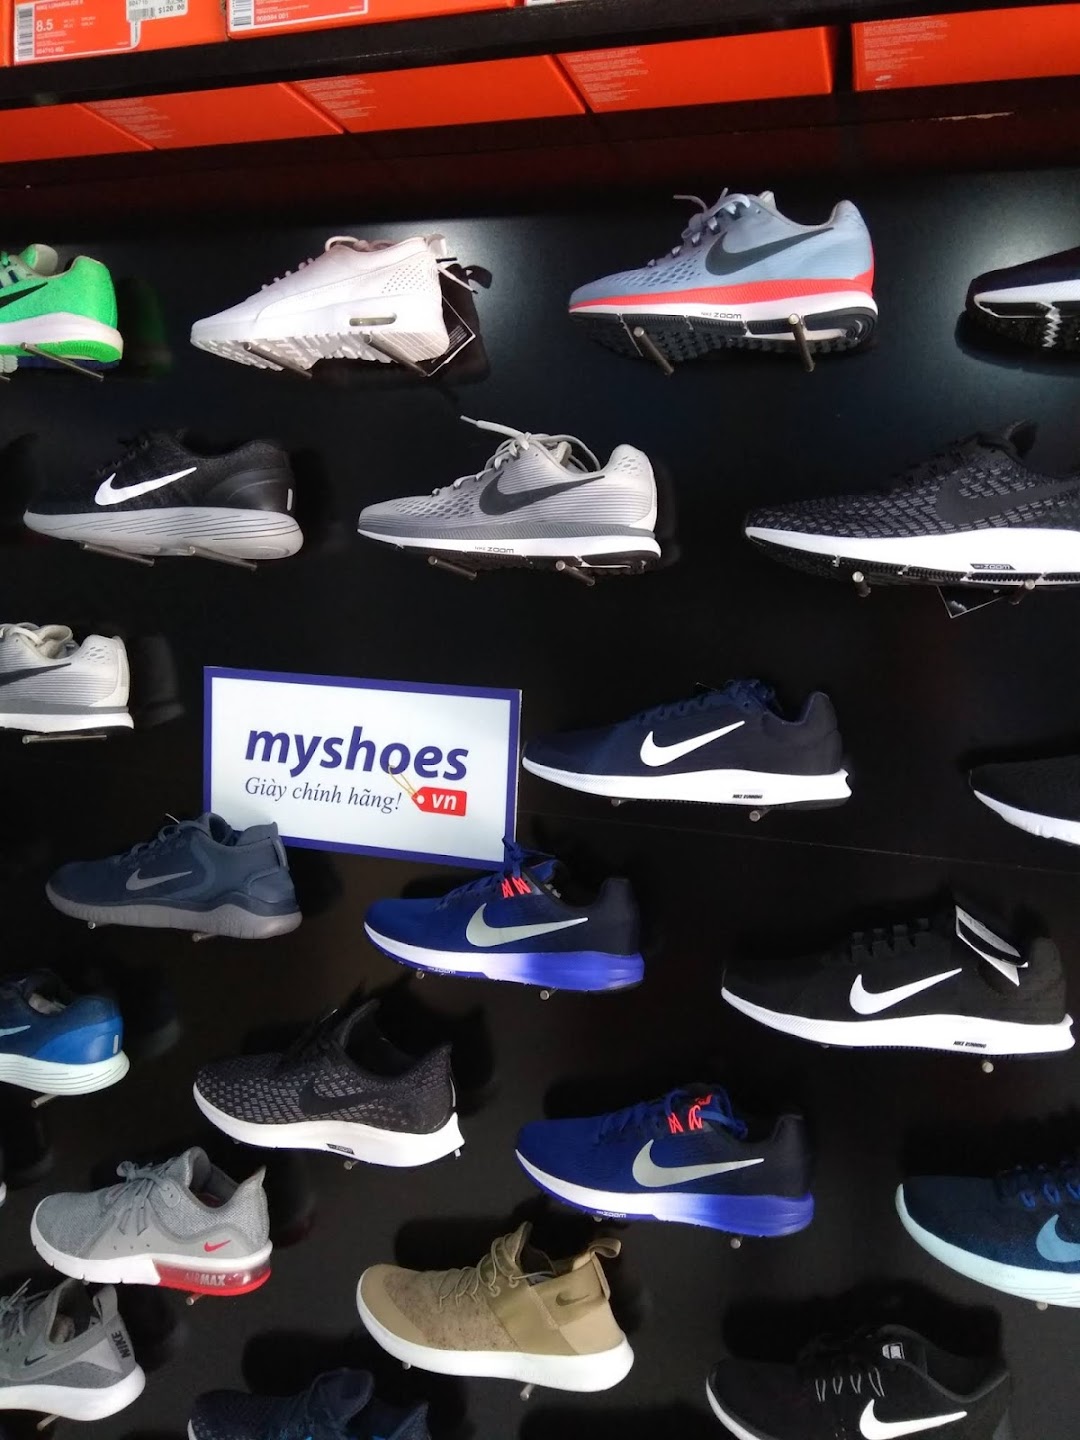 Myshoes.vn - Giày Chính Hãng - Chi Nhánh HCM